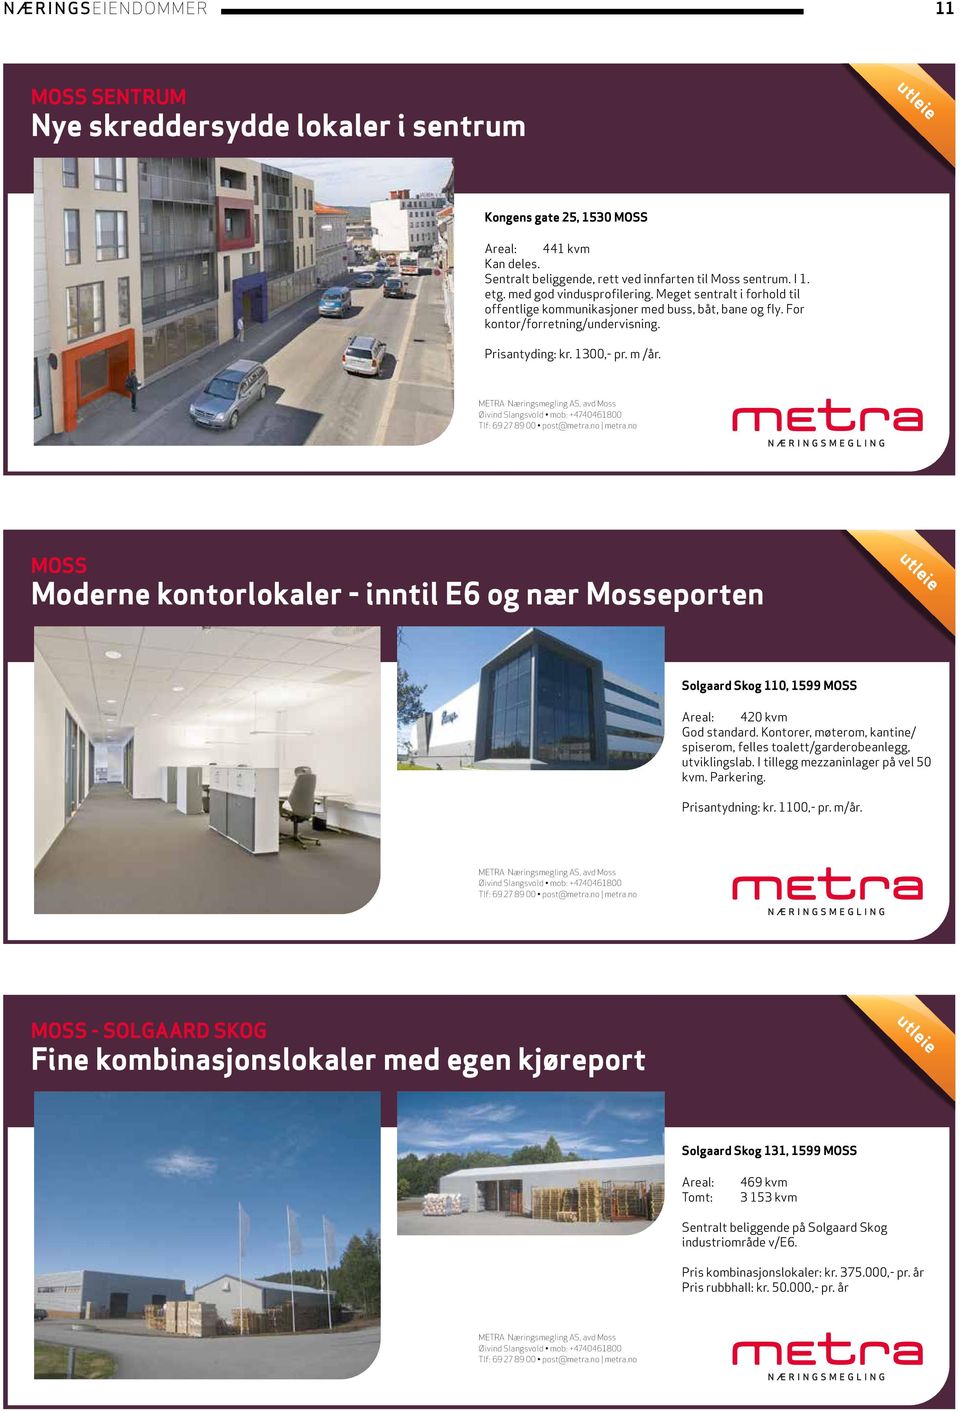 MOSS Moderne kontorlokaler - inntil E6 og nær Mosseporten Solgaard Skog 110, 1599 MOSS 420 kvm God standard. Kontorer, møterom, kantine/ spiserom, felles toalett/garderobeanlegg, utviklingslab.